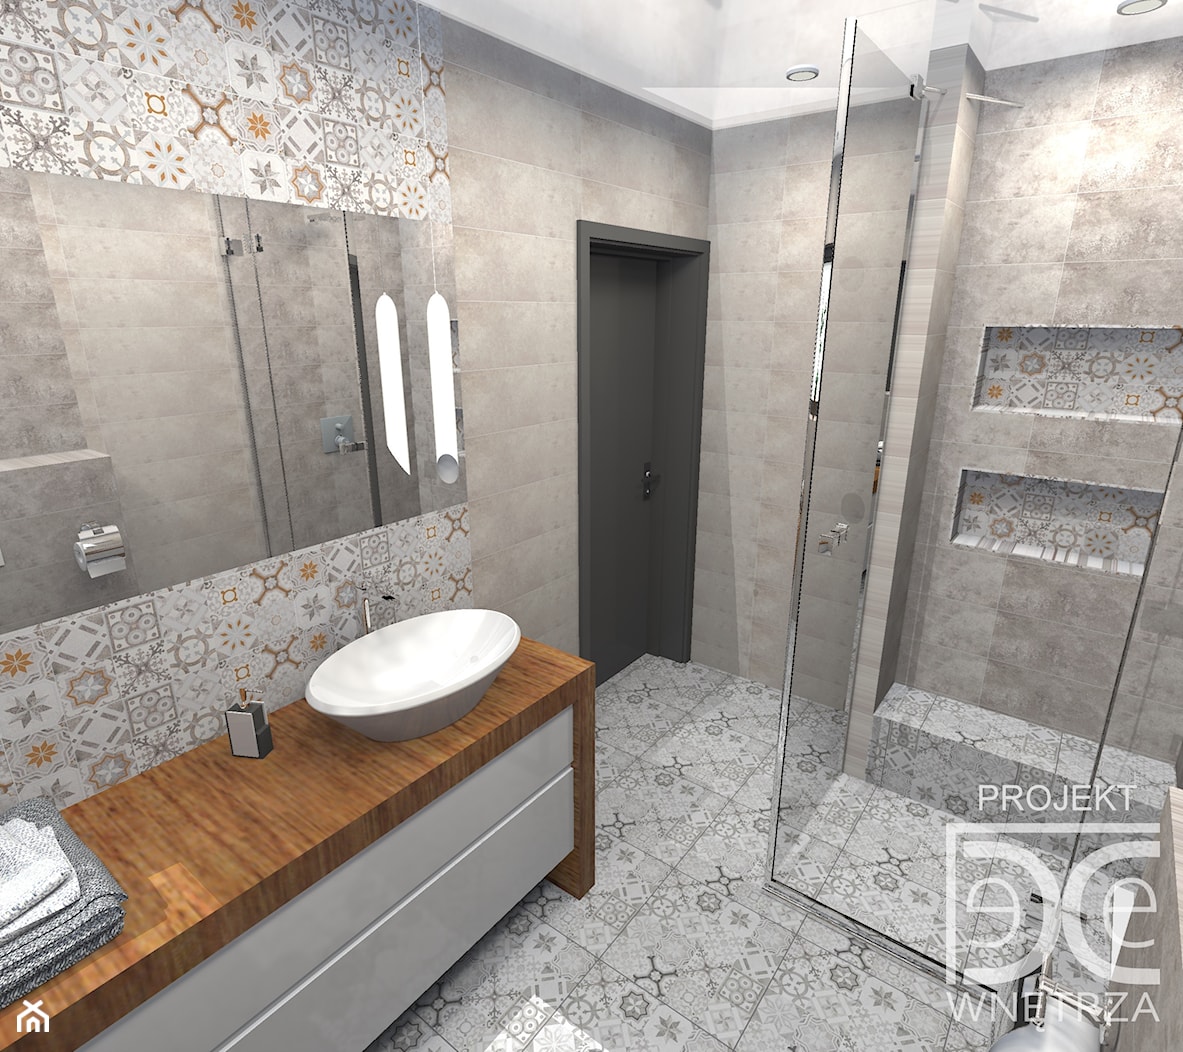 Nowoczesna łazienka z patchworkowym wzorem - zdjęcie od DeCe Wnętrza - Dominika Ciuberek - Homebook